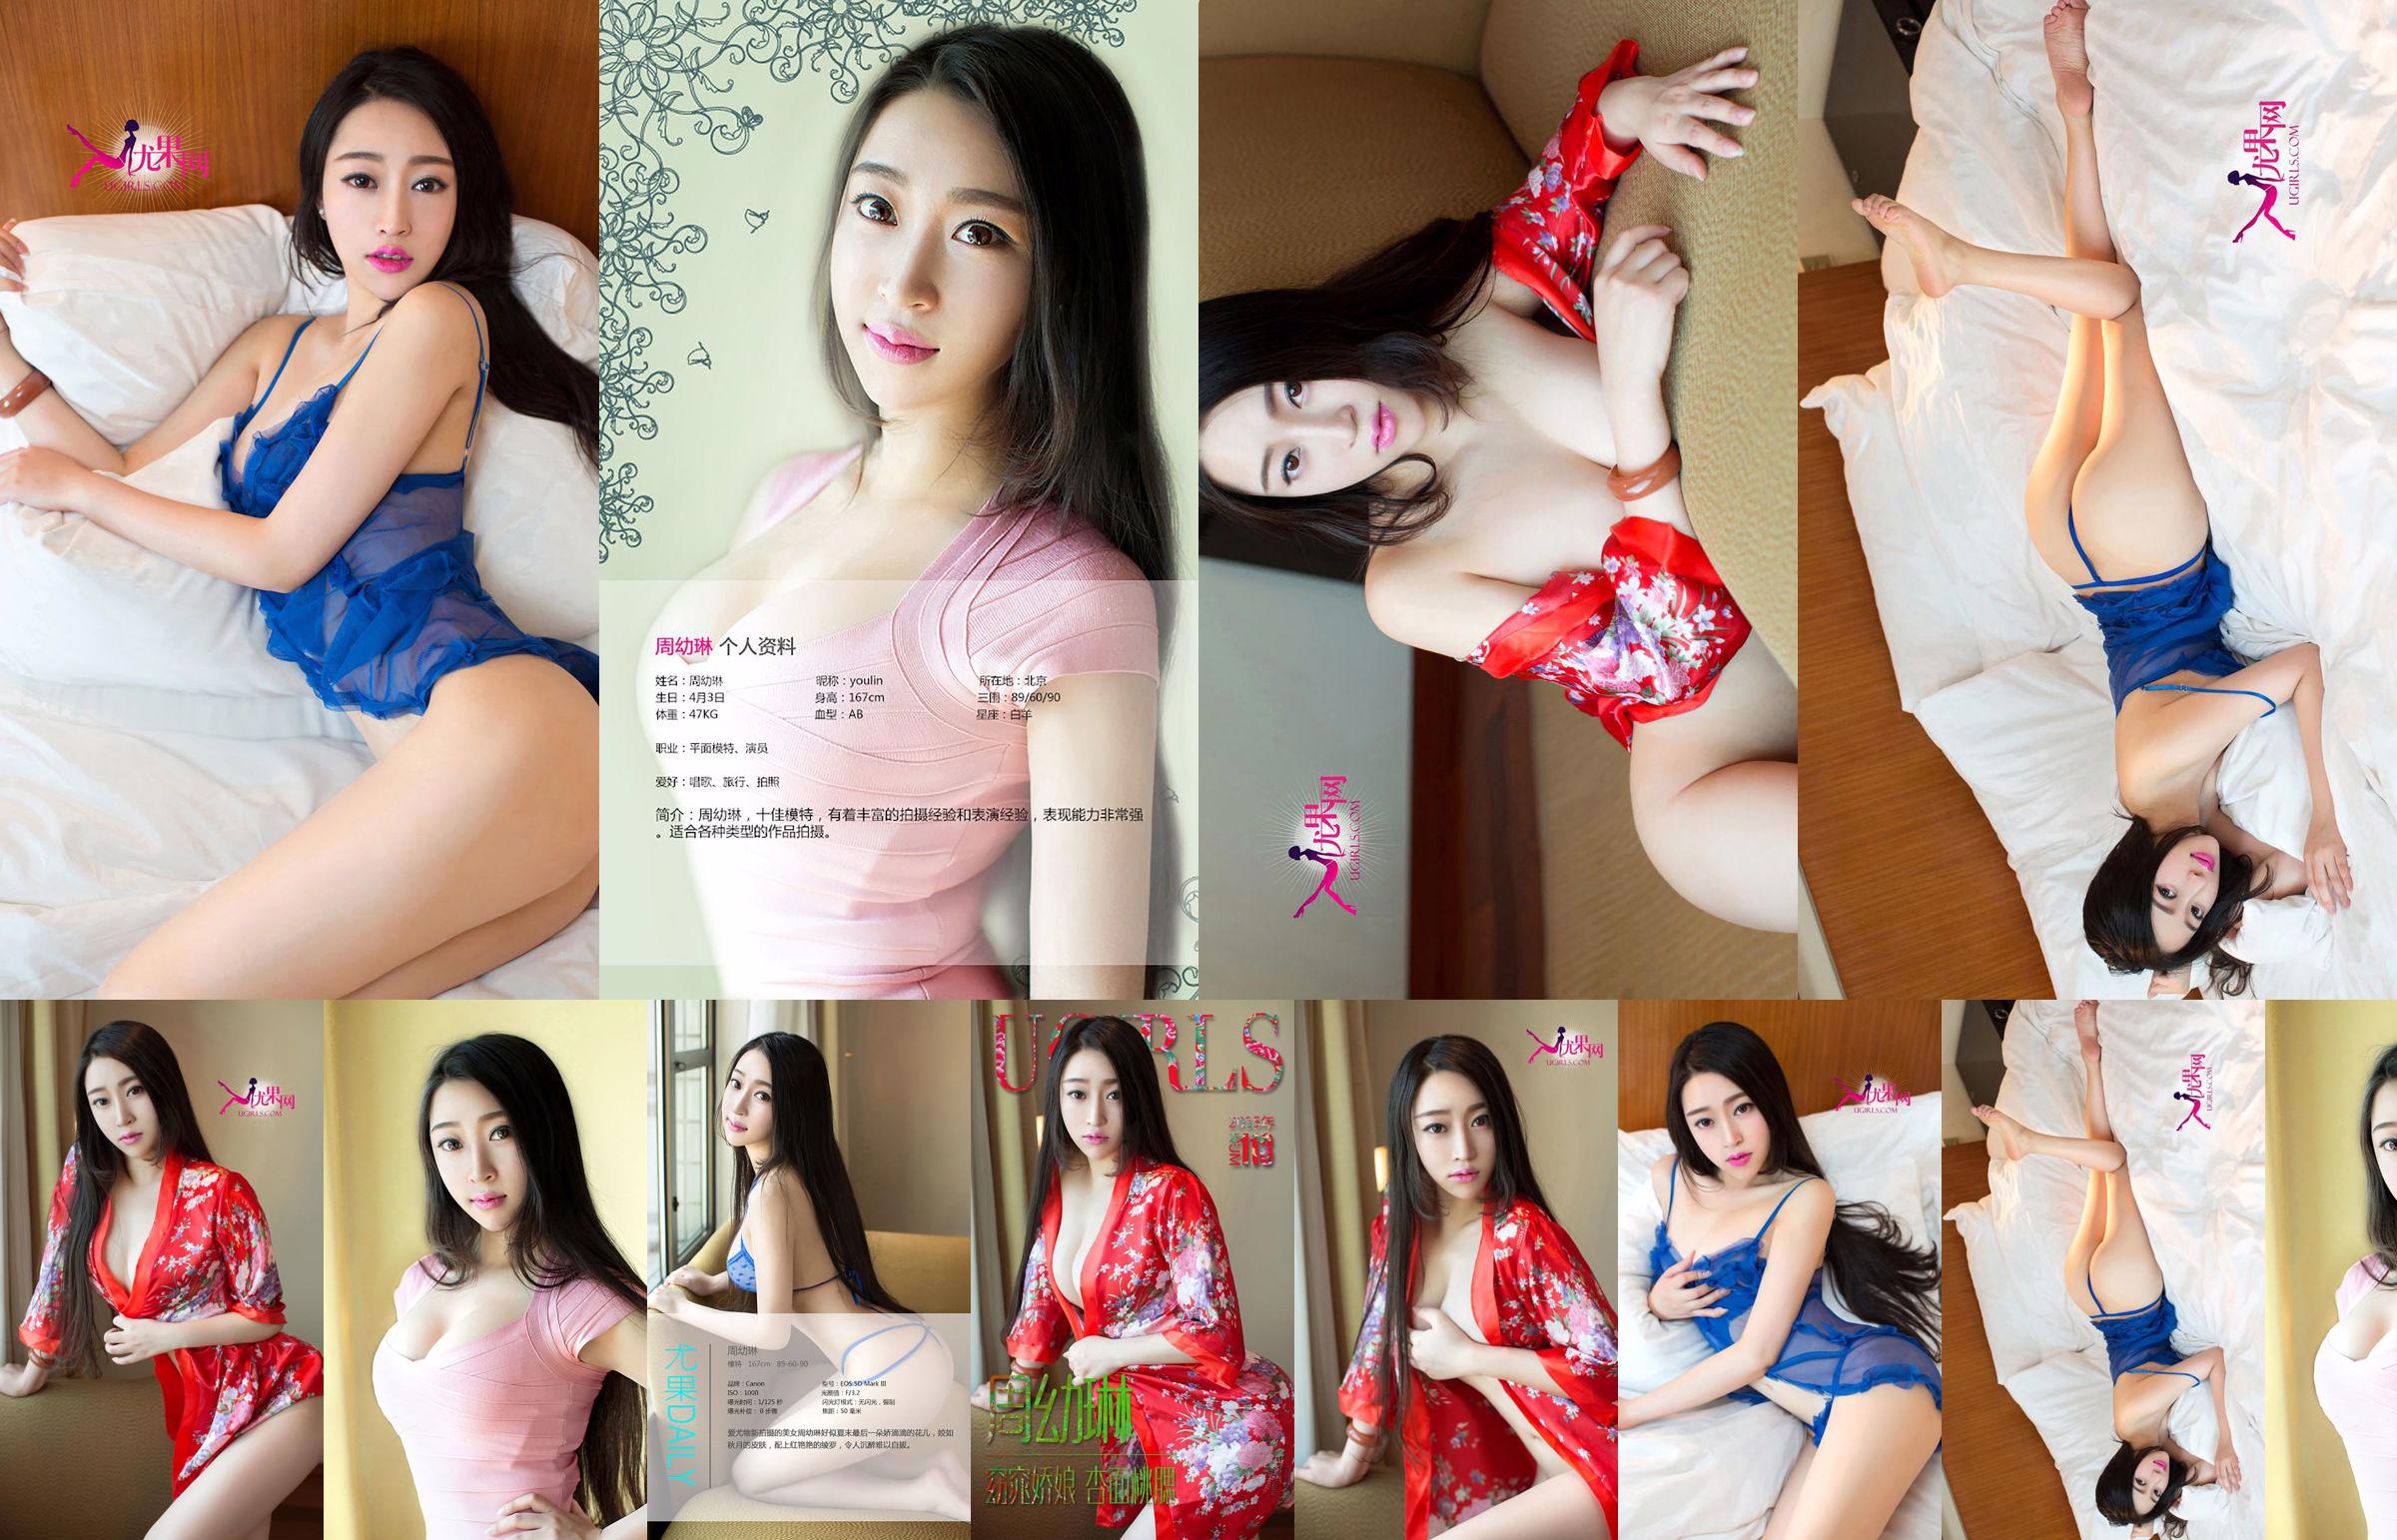 Zhou Youlin "Một cô gái xinh đẹp với khuôn mặt hoa mai và đôi má đào" [Love Youwu Ugirls] No.113 No.091bfe Trang 20